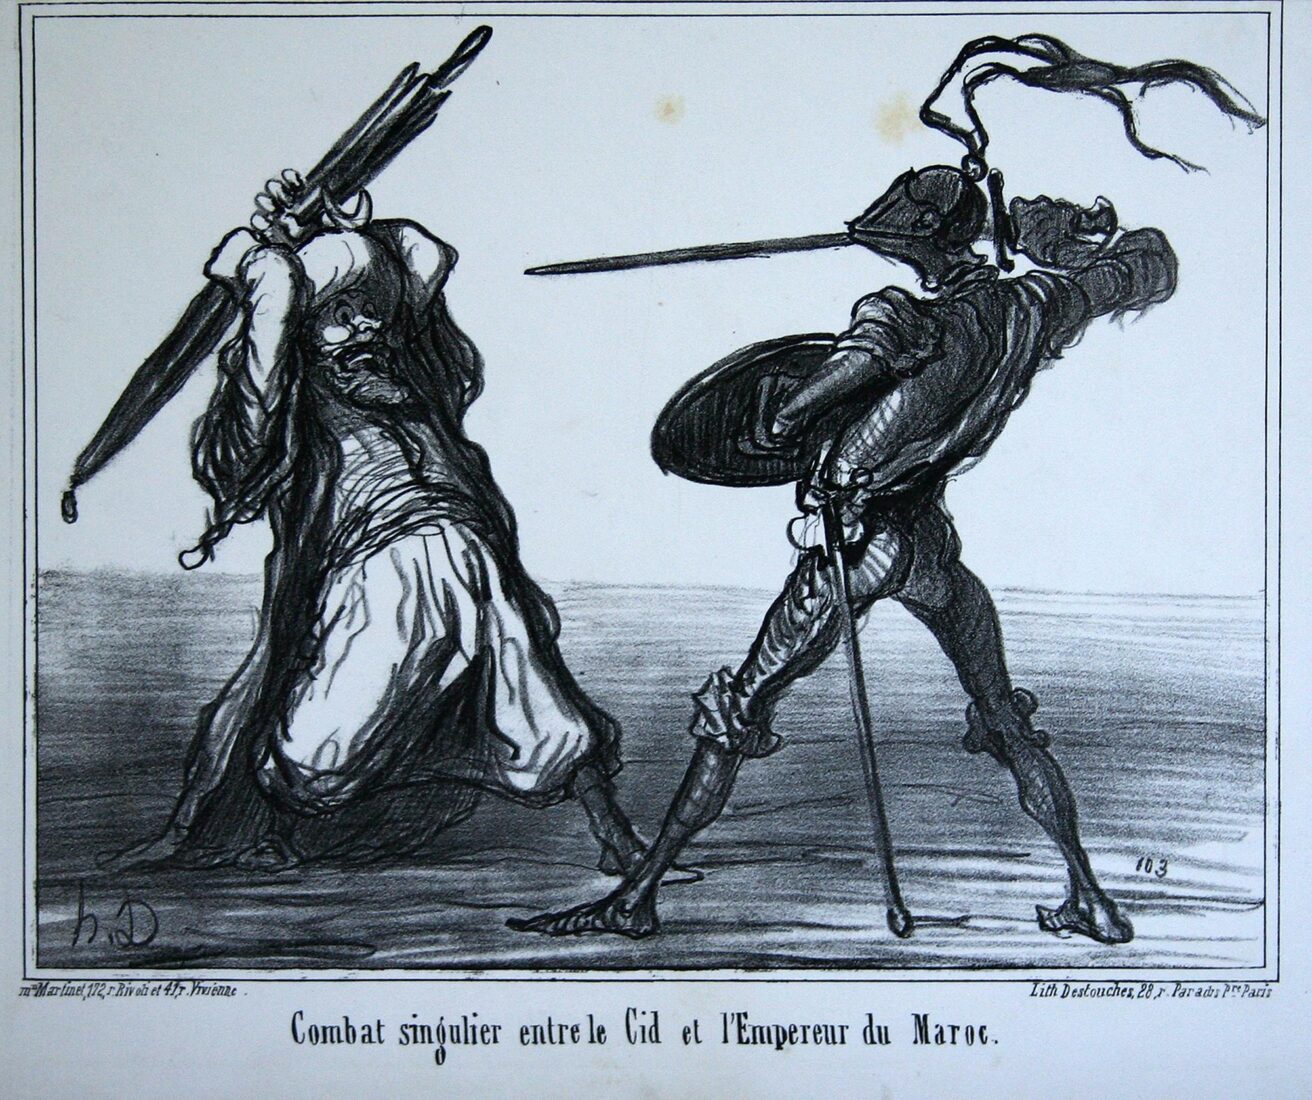 “Μονομαχία ανάμεσα στον Σιντ και τον αυτοκράτορα του Μαρόκου” - Daumier Honore